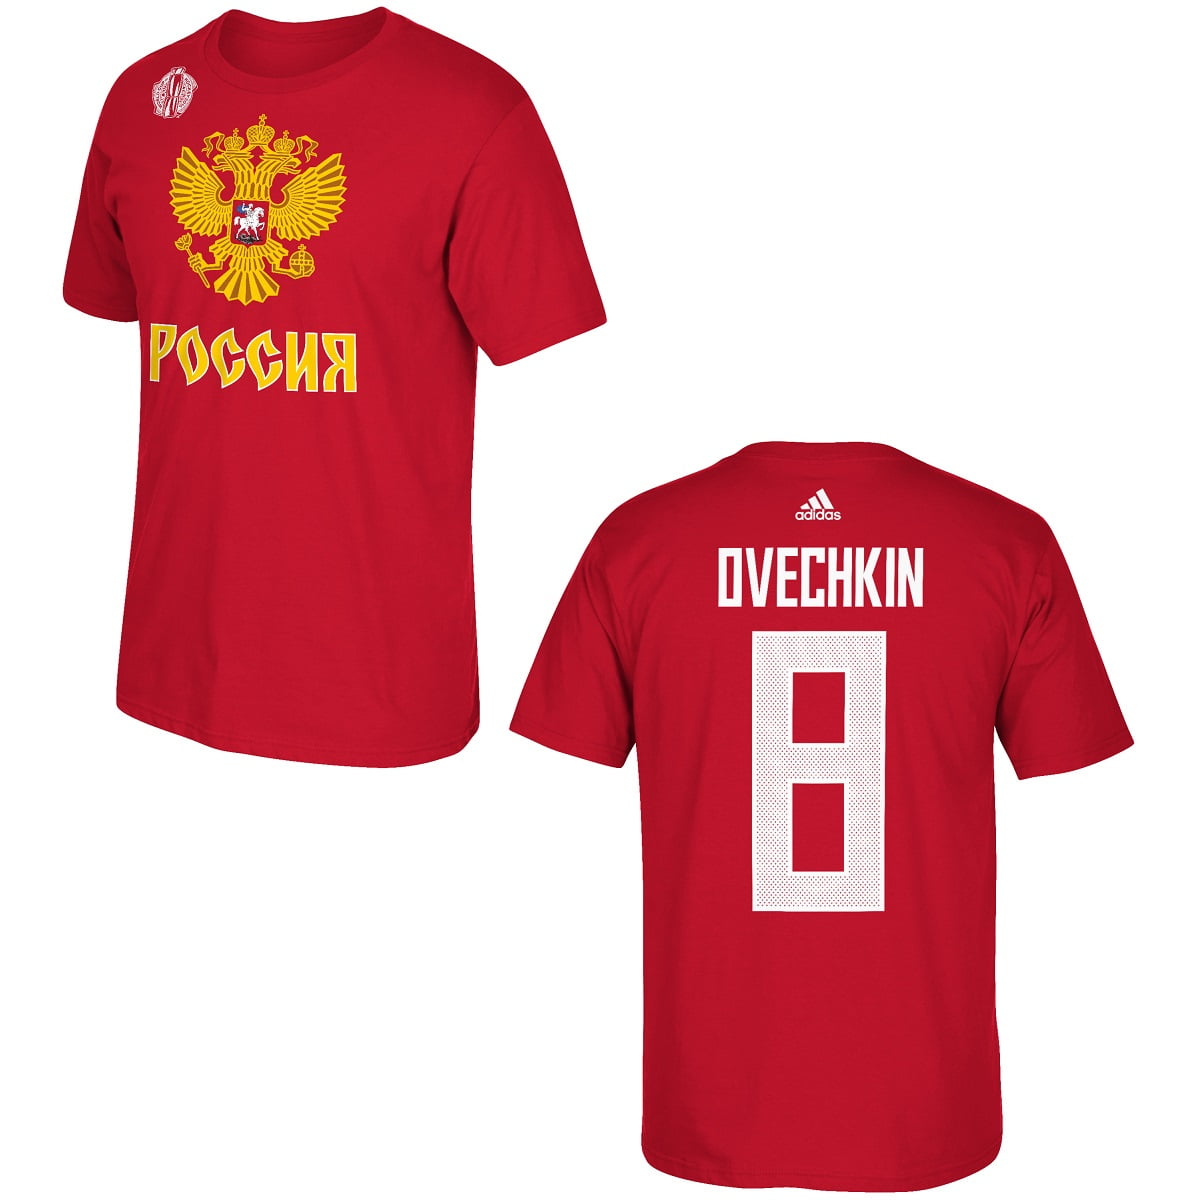 ovechkin shirt in russian